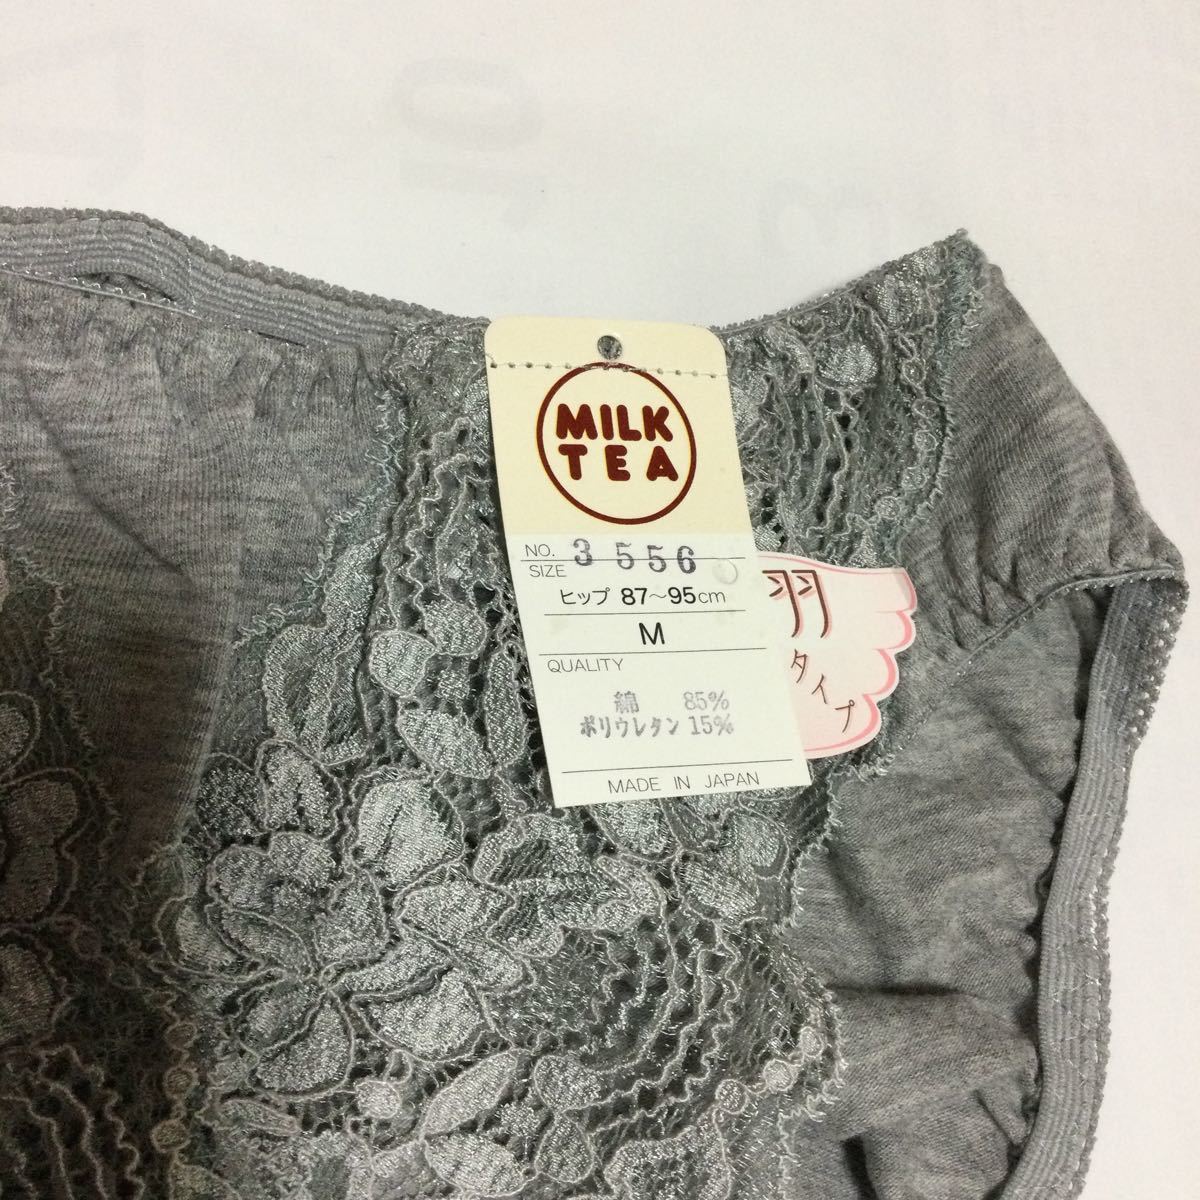  серый цветочный принт гонки гигиенический шорты M размер новый товар M размер перо модель с биркой сделано в Японии ivu